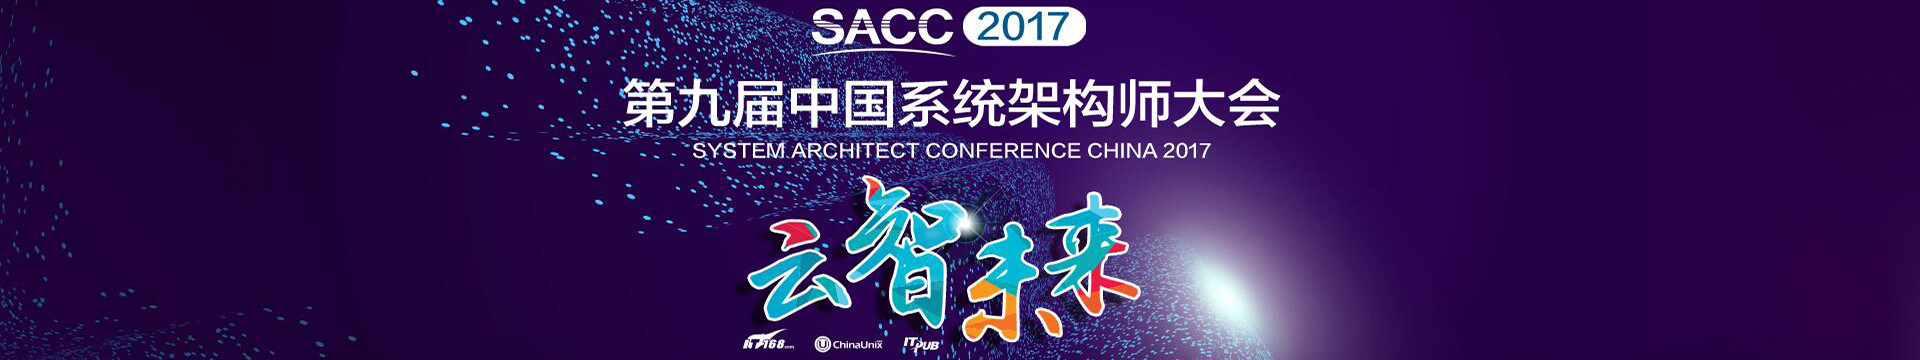 SACC 2018第十届系统架构师大会